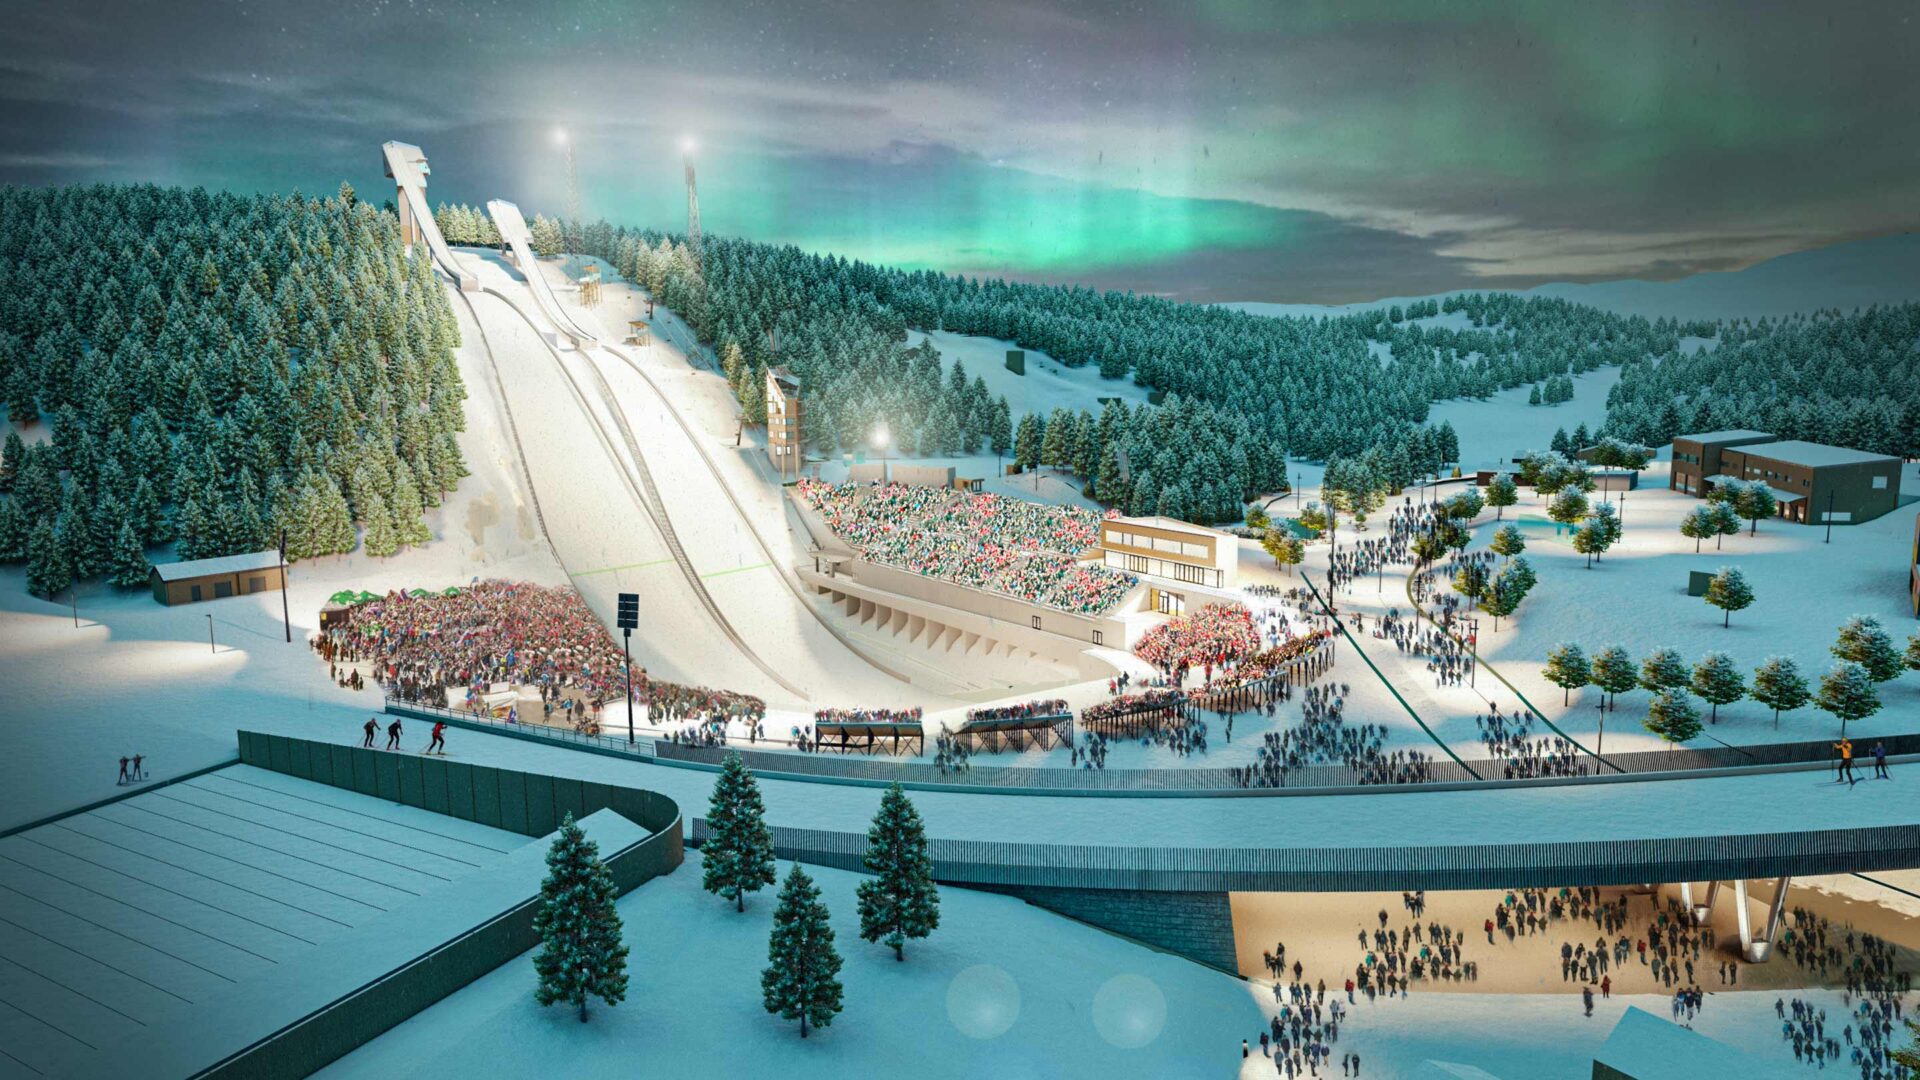 Peter Riedel GmbH erhält Zuschlag für die nordische Ski WM 2025 in Trondheim